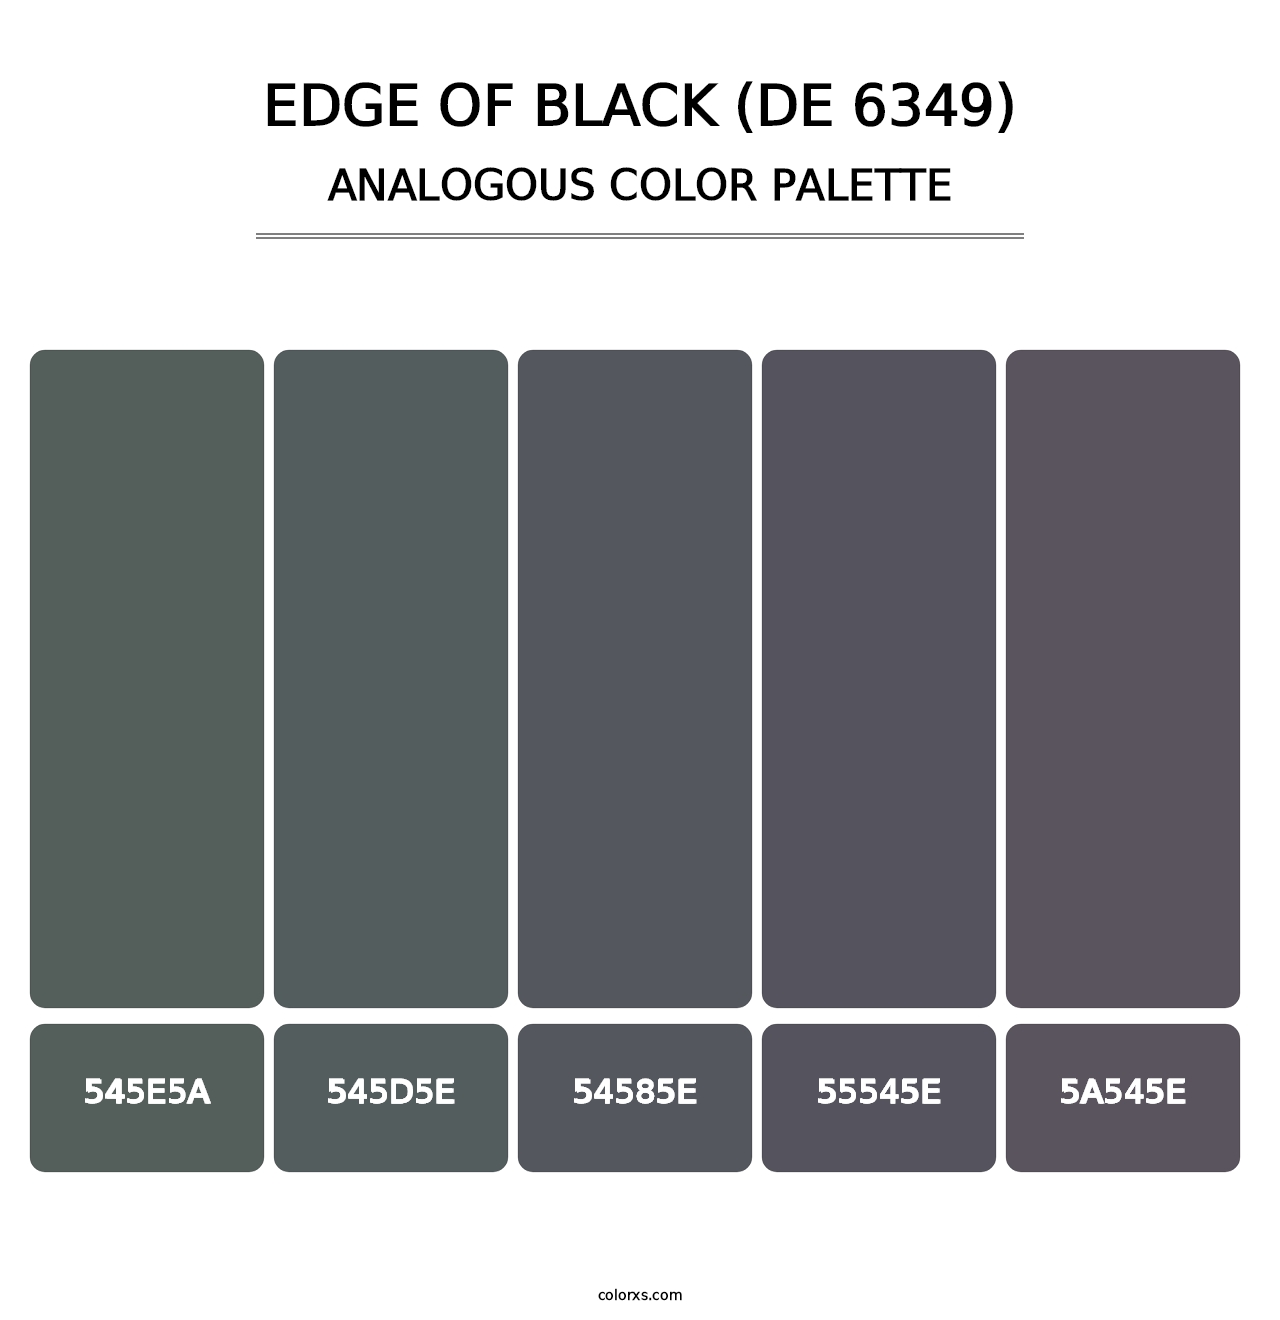 Edge of Black (DE 6349) - Analogous Color Palette